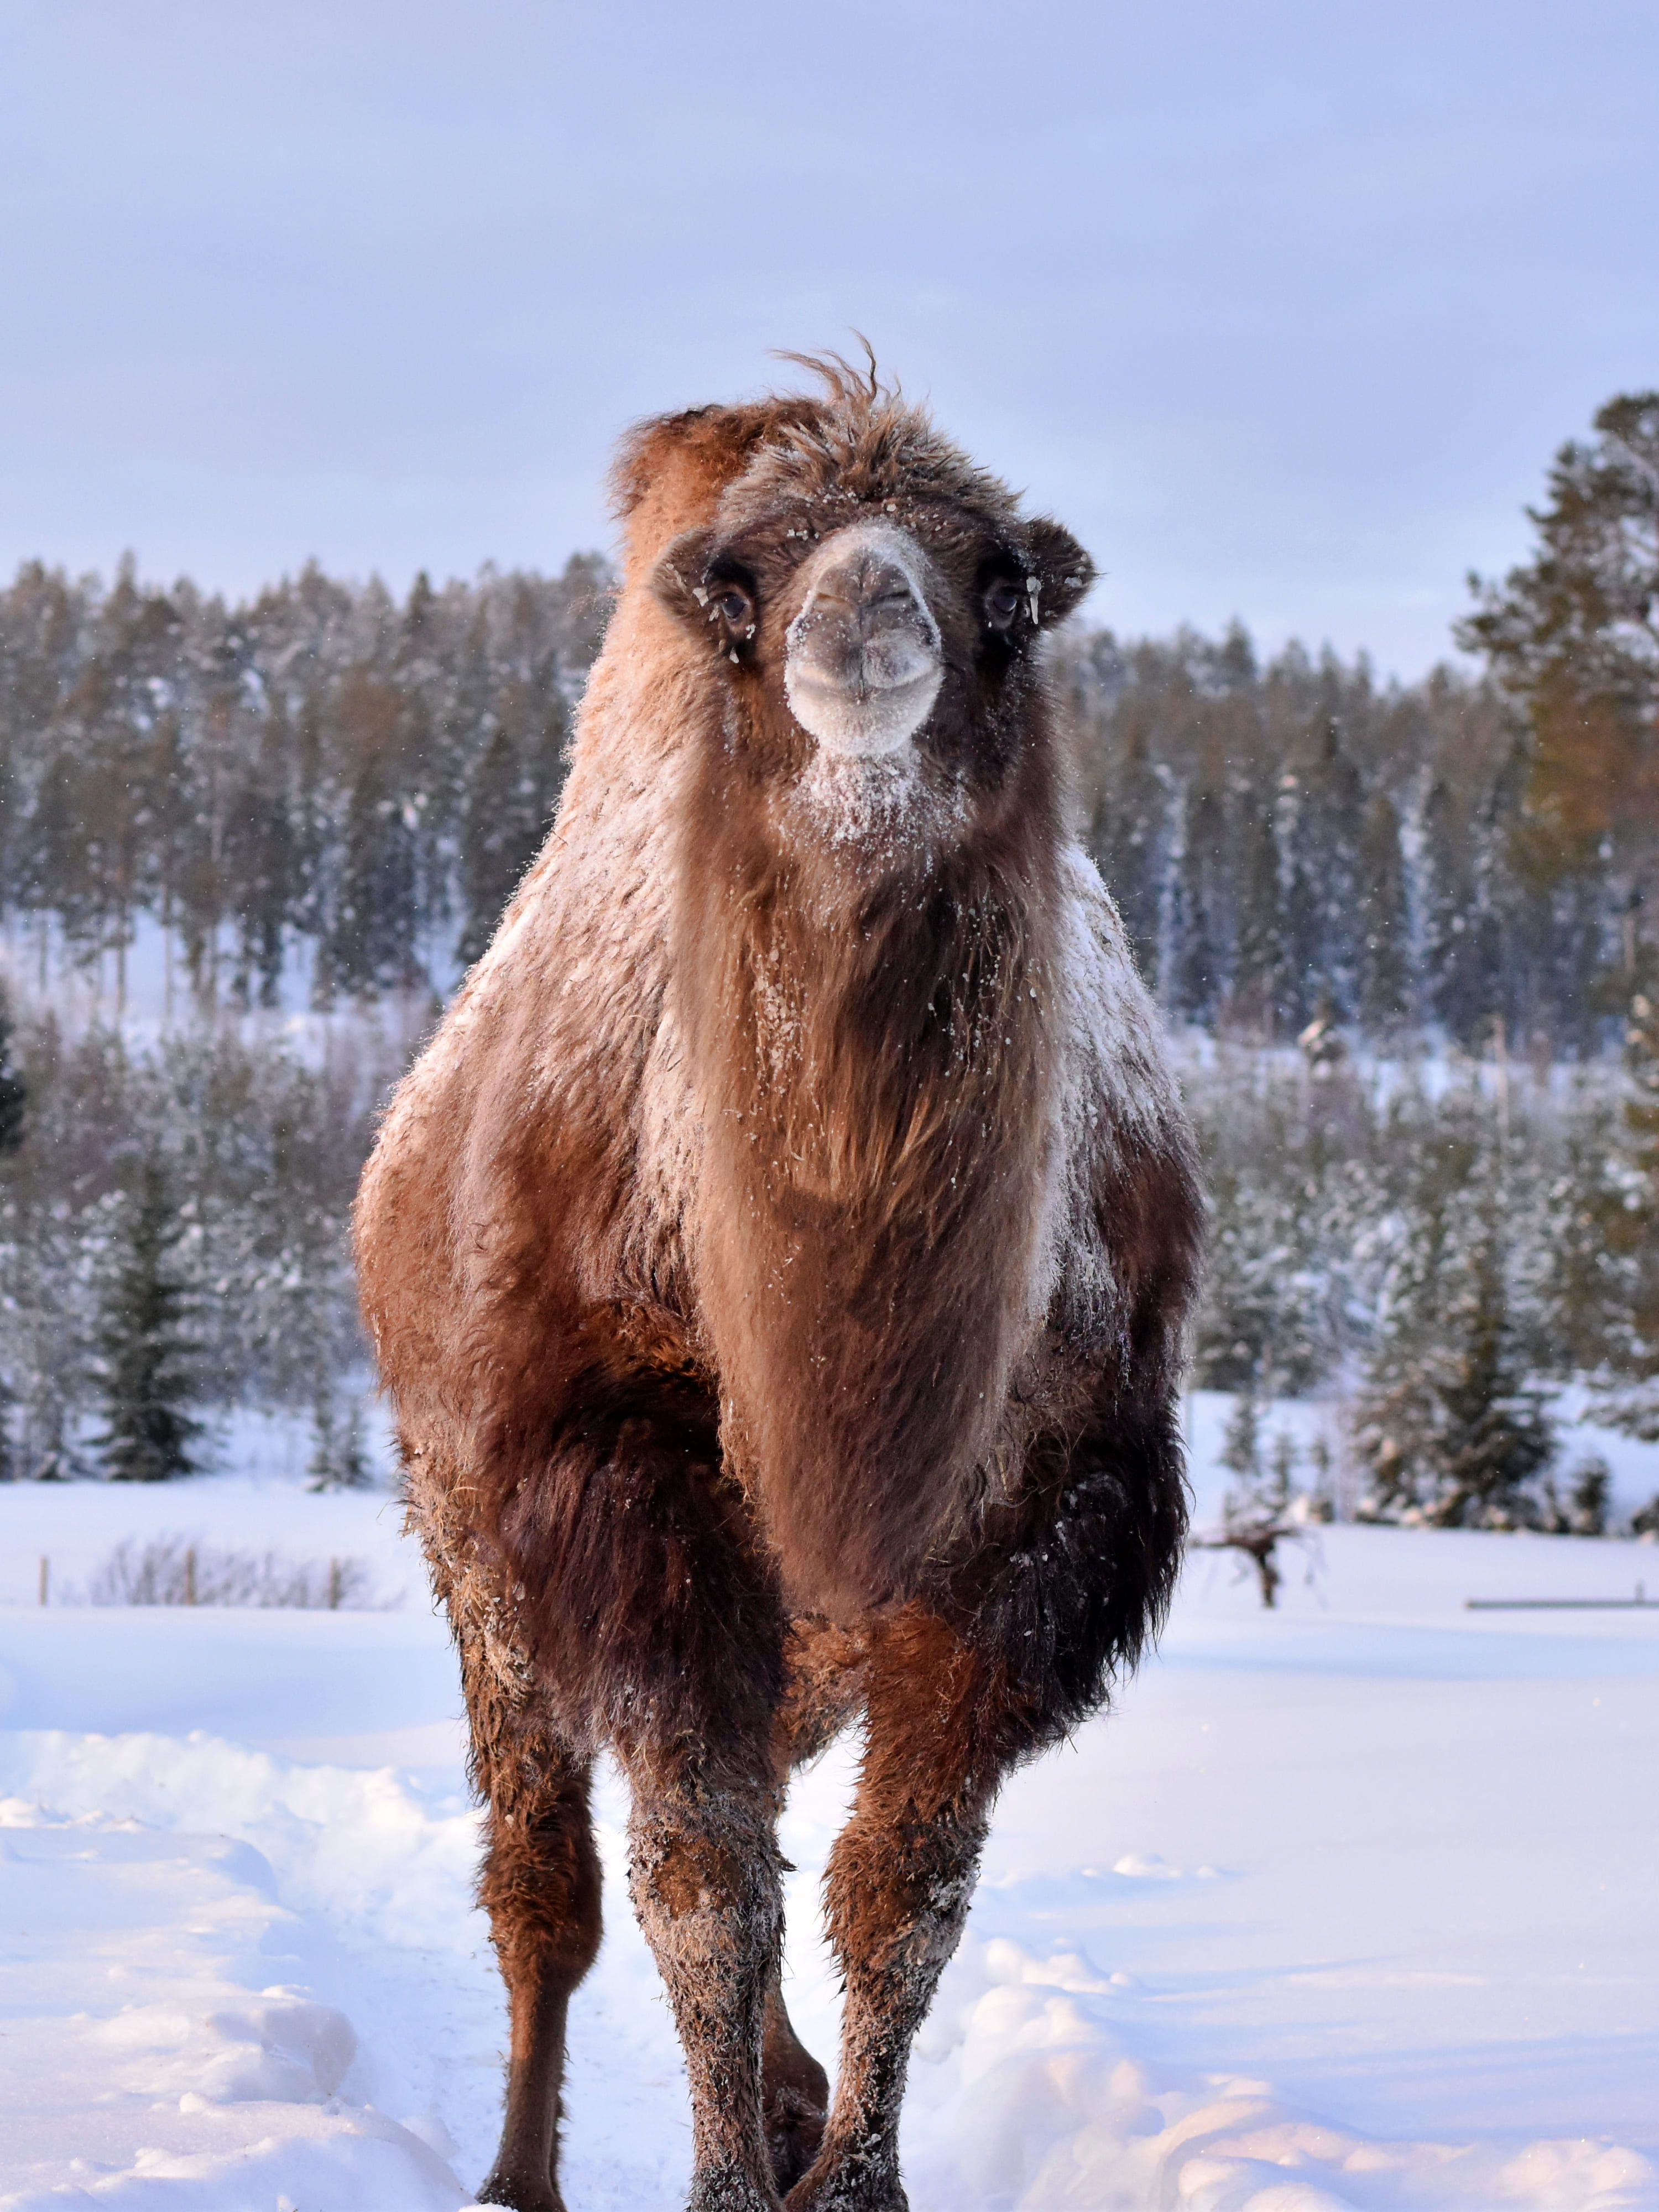 Camel in snow